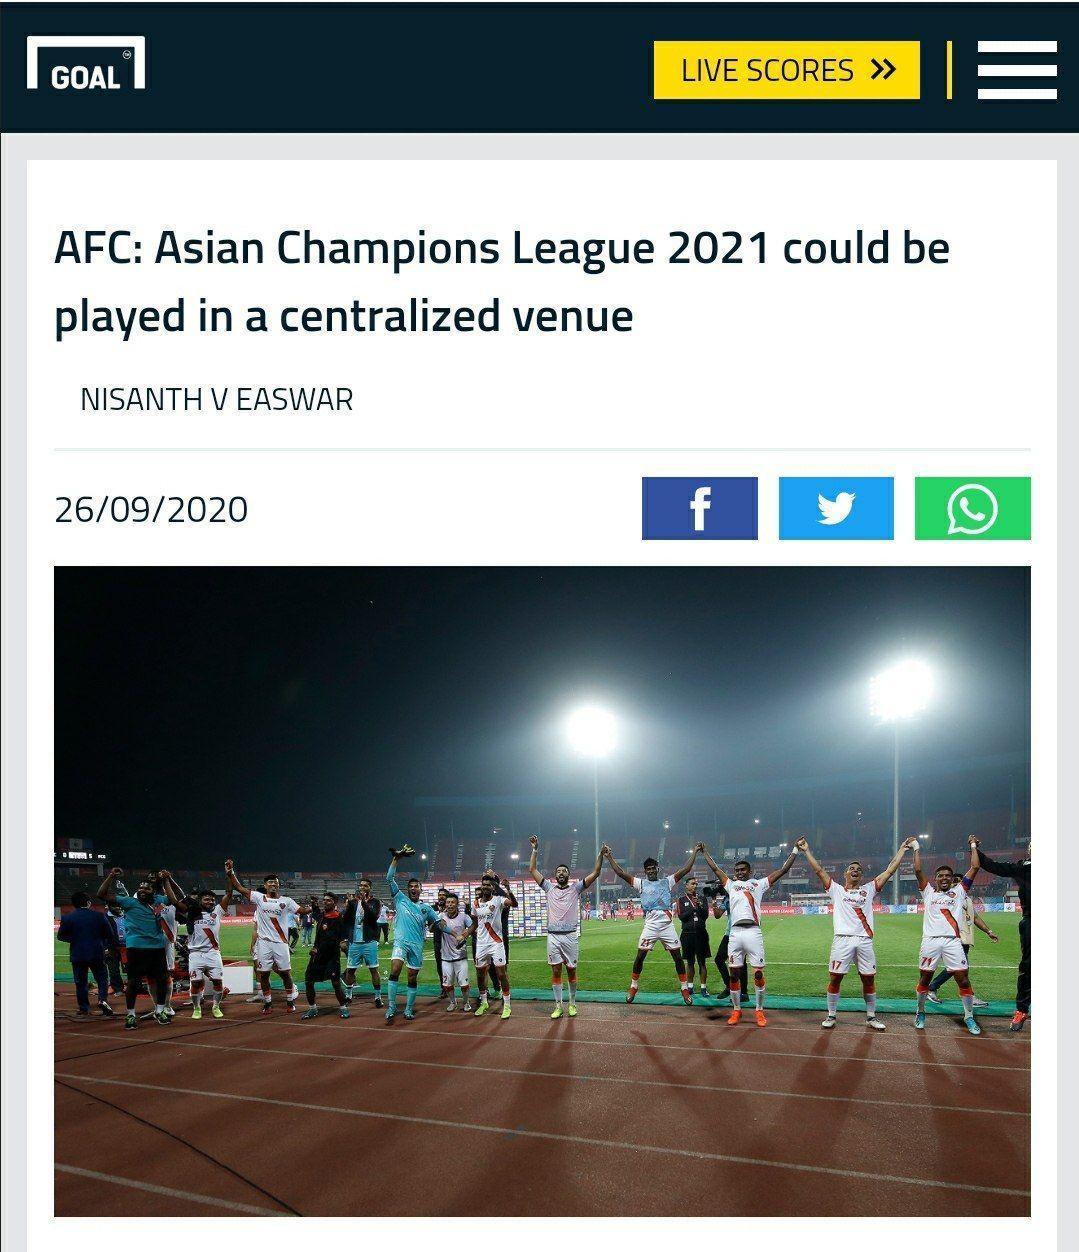 احتمال برگزاری لیگ قهرمانان آسیا در فصل آینده به صورت متمرکز